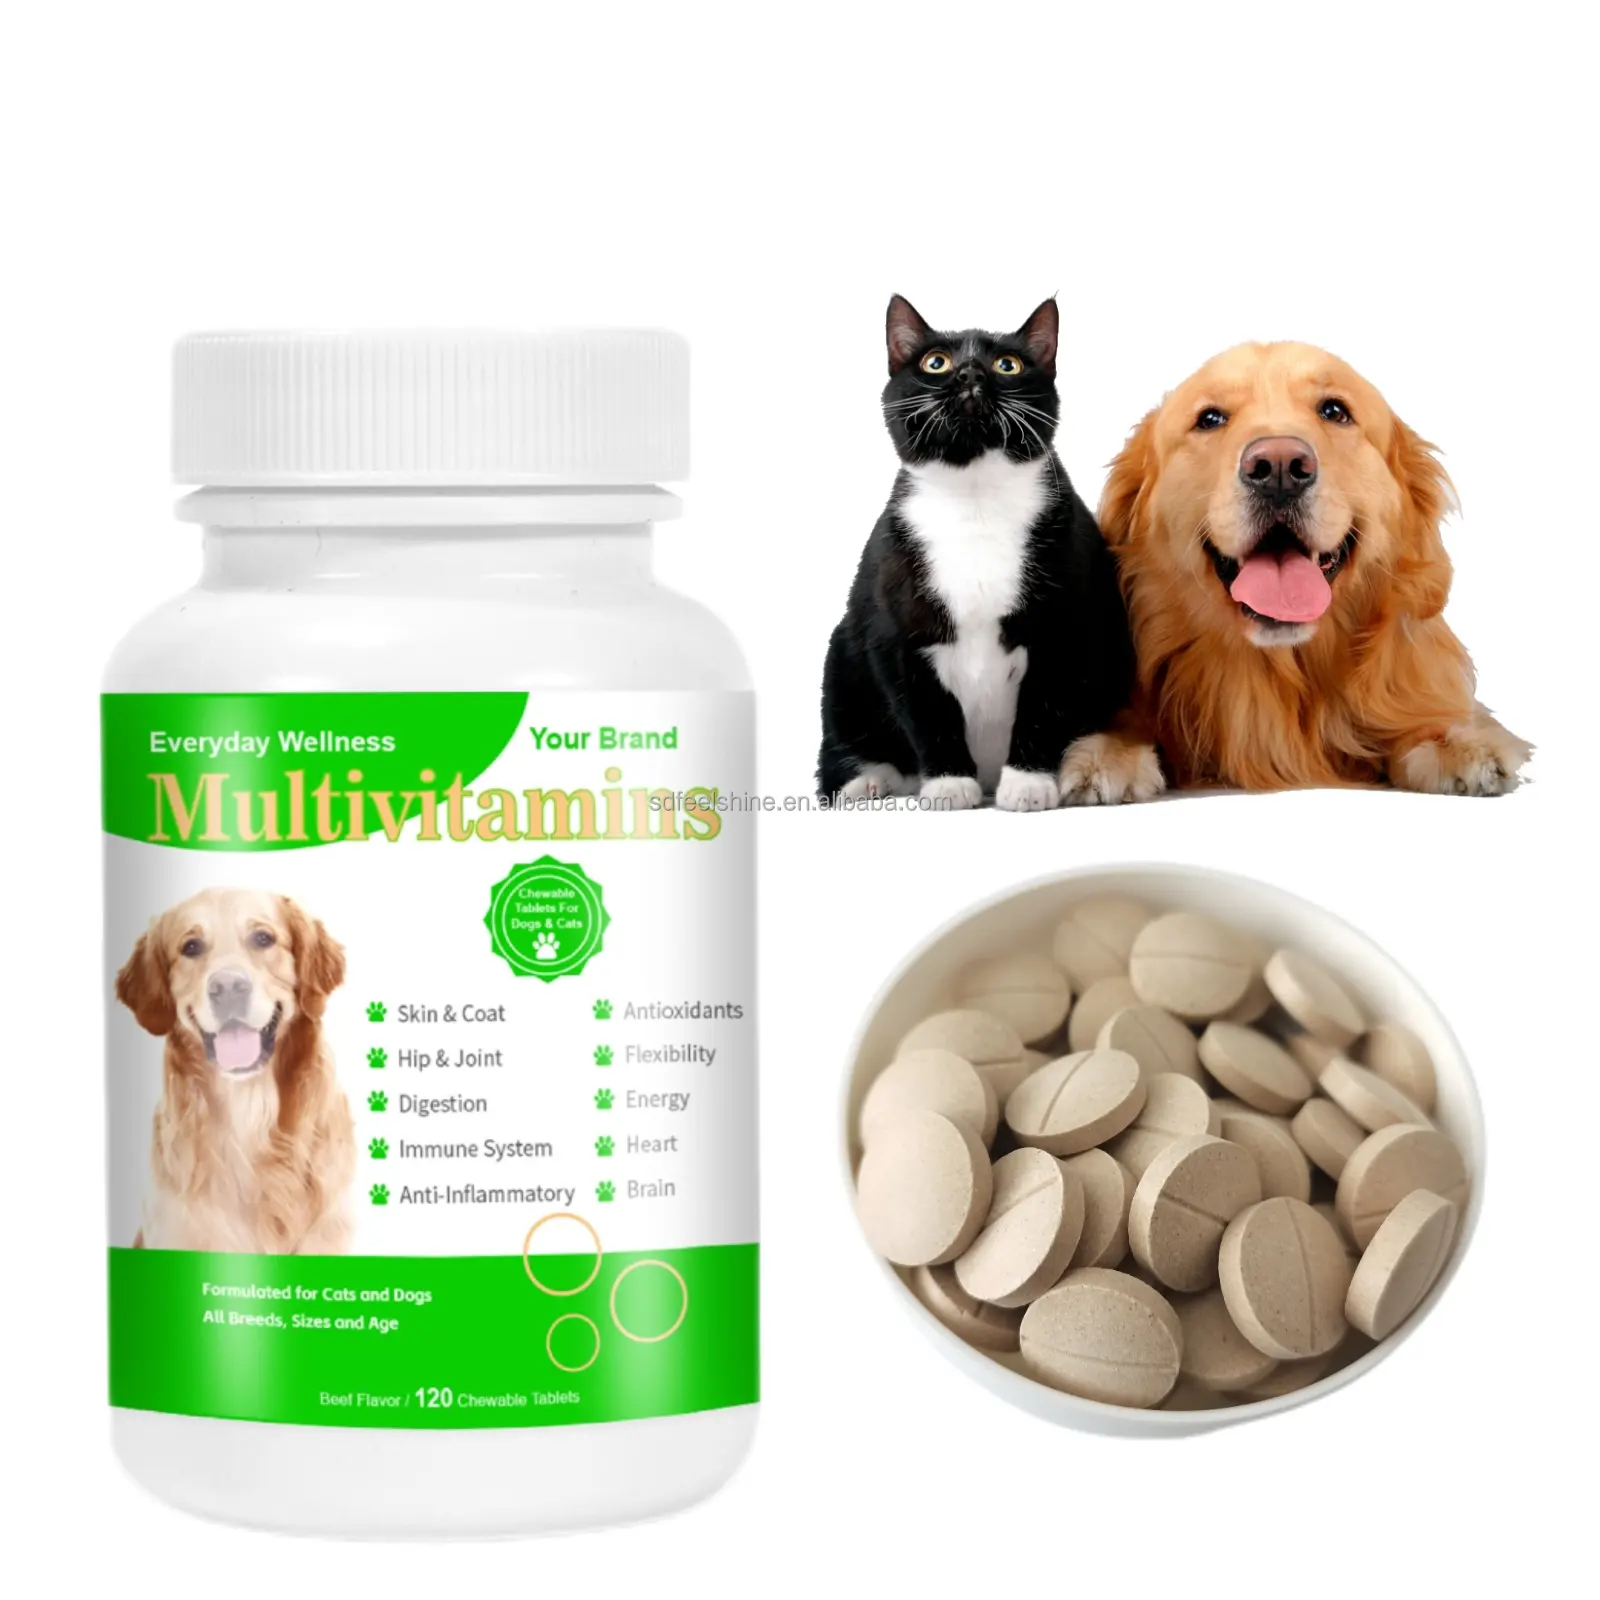 プライベートラベルドッグフード16in1マルチビタミン錠栄養マルチビタミン犬のビタミンとサプリメント